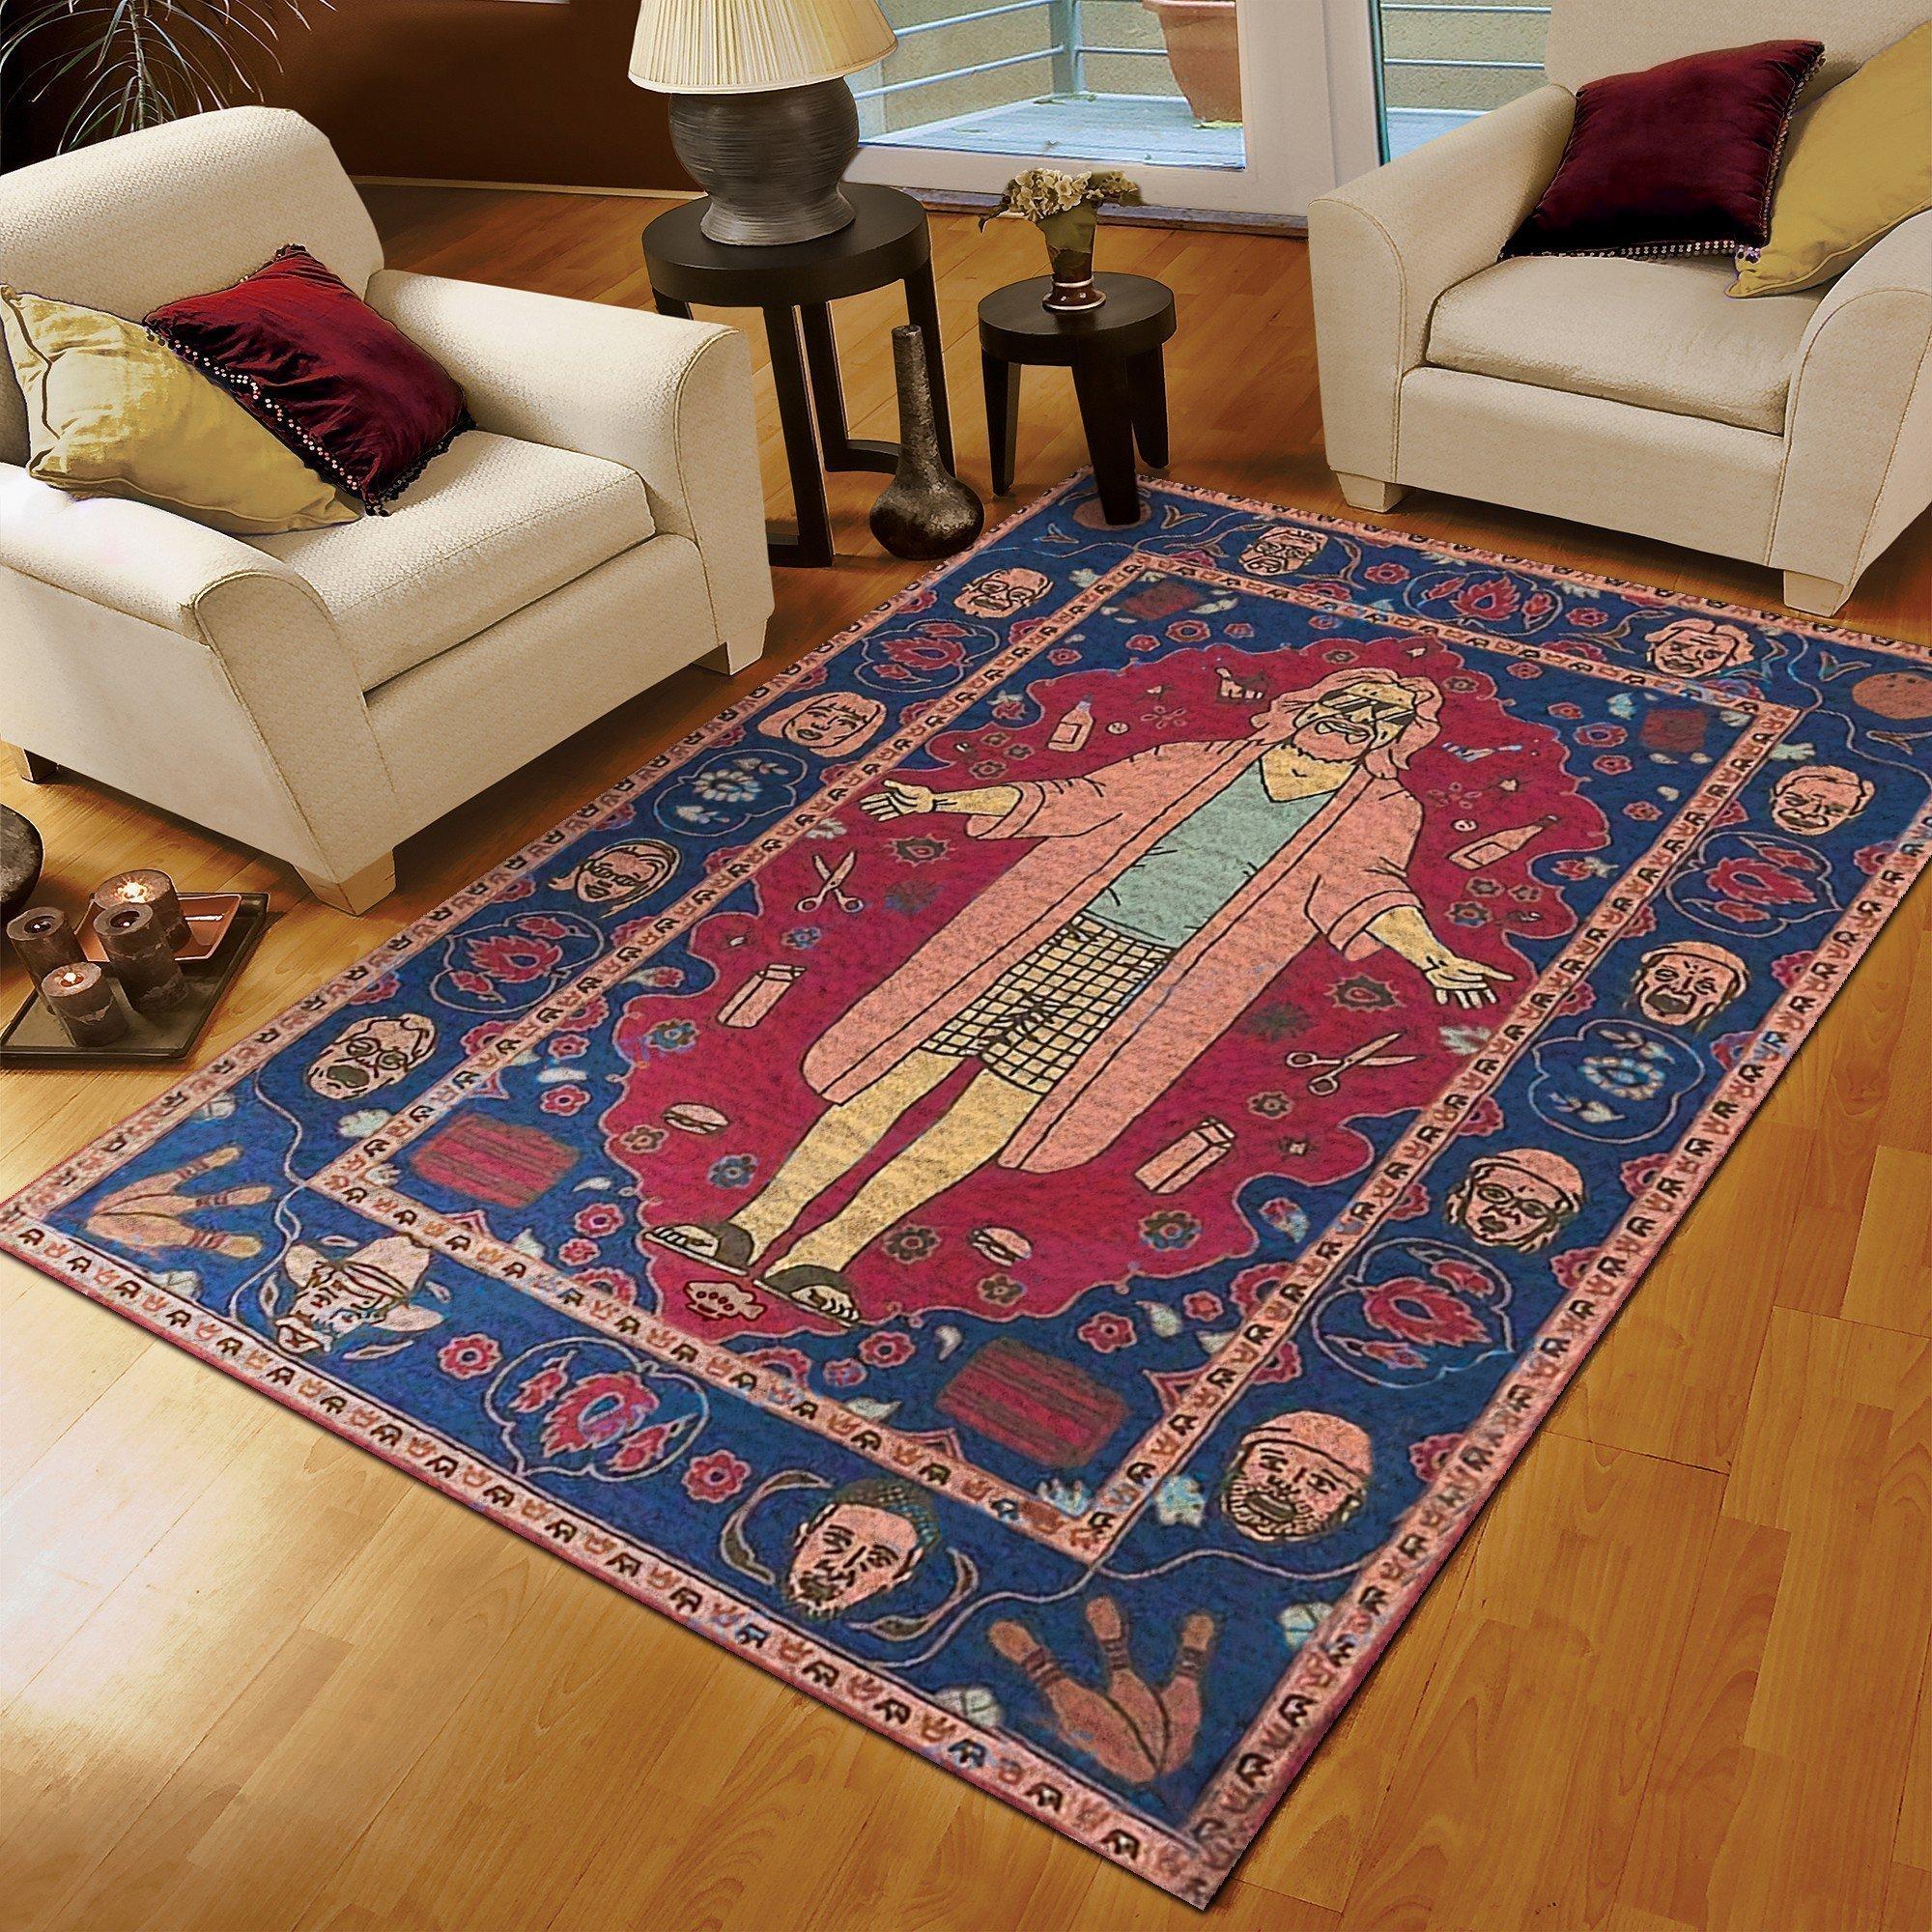 The big lebowski rug - medium